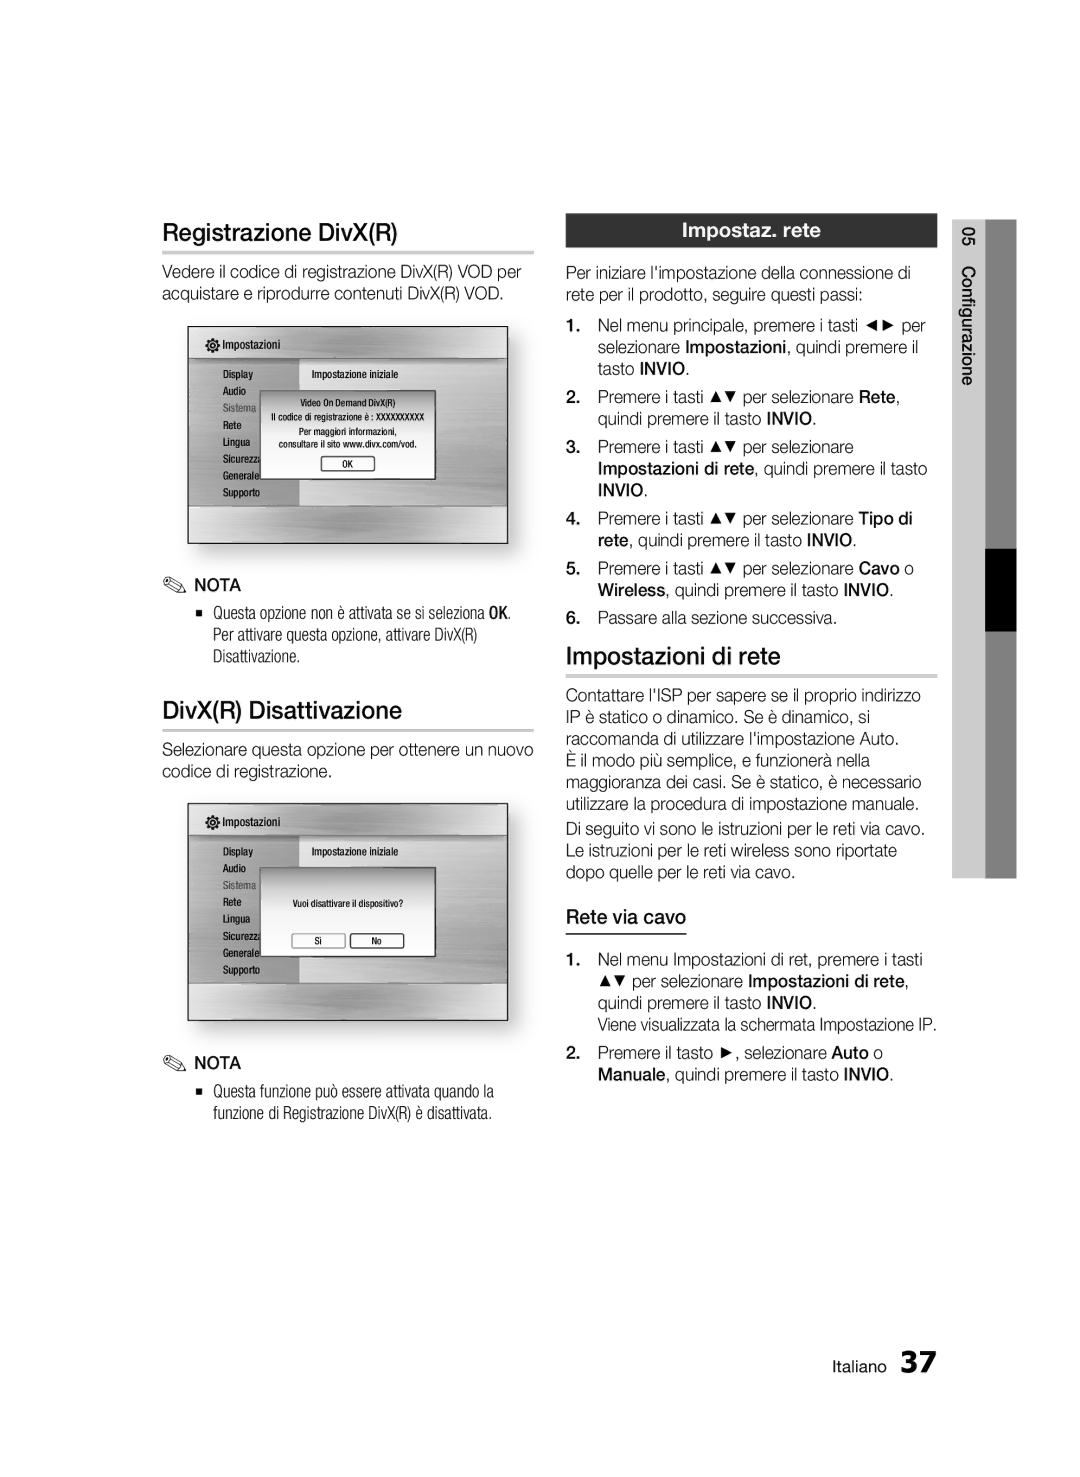 Samsung BD-C7500/EDC manual Registrazione DivXR, DivXR Disattivazione, Impostazioni di rete, Impostaz. rete, Rete via cavo 